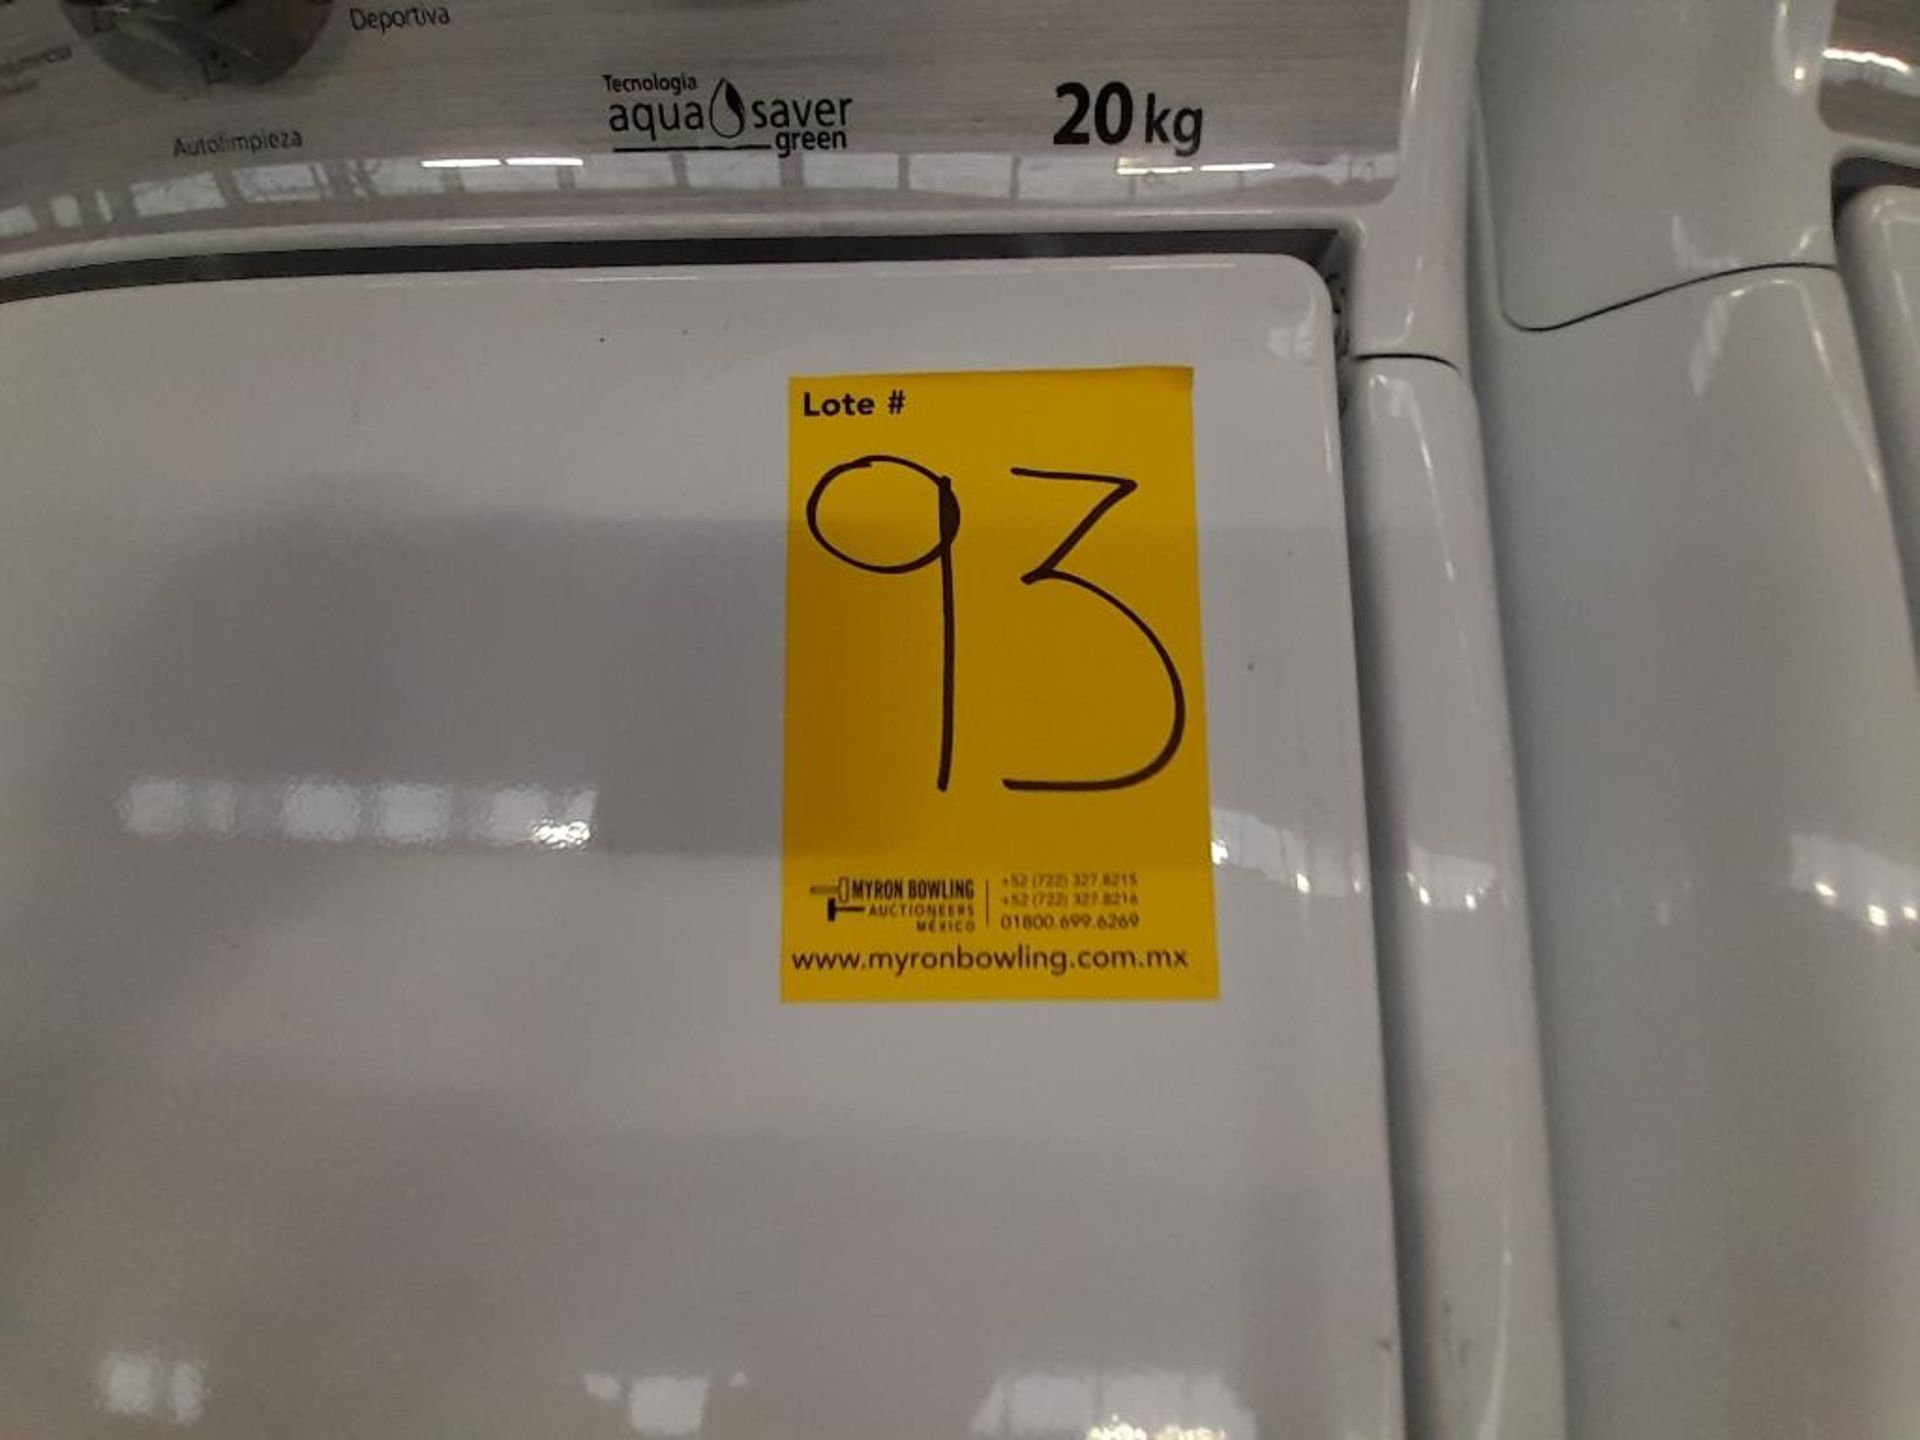 Lote de 2 lavadoras Contiene: 1 lavadora de 20 KG Marca MABE, Modelo LMA70213CBAB03, Serie S19193, - Image 6 of 6